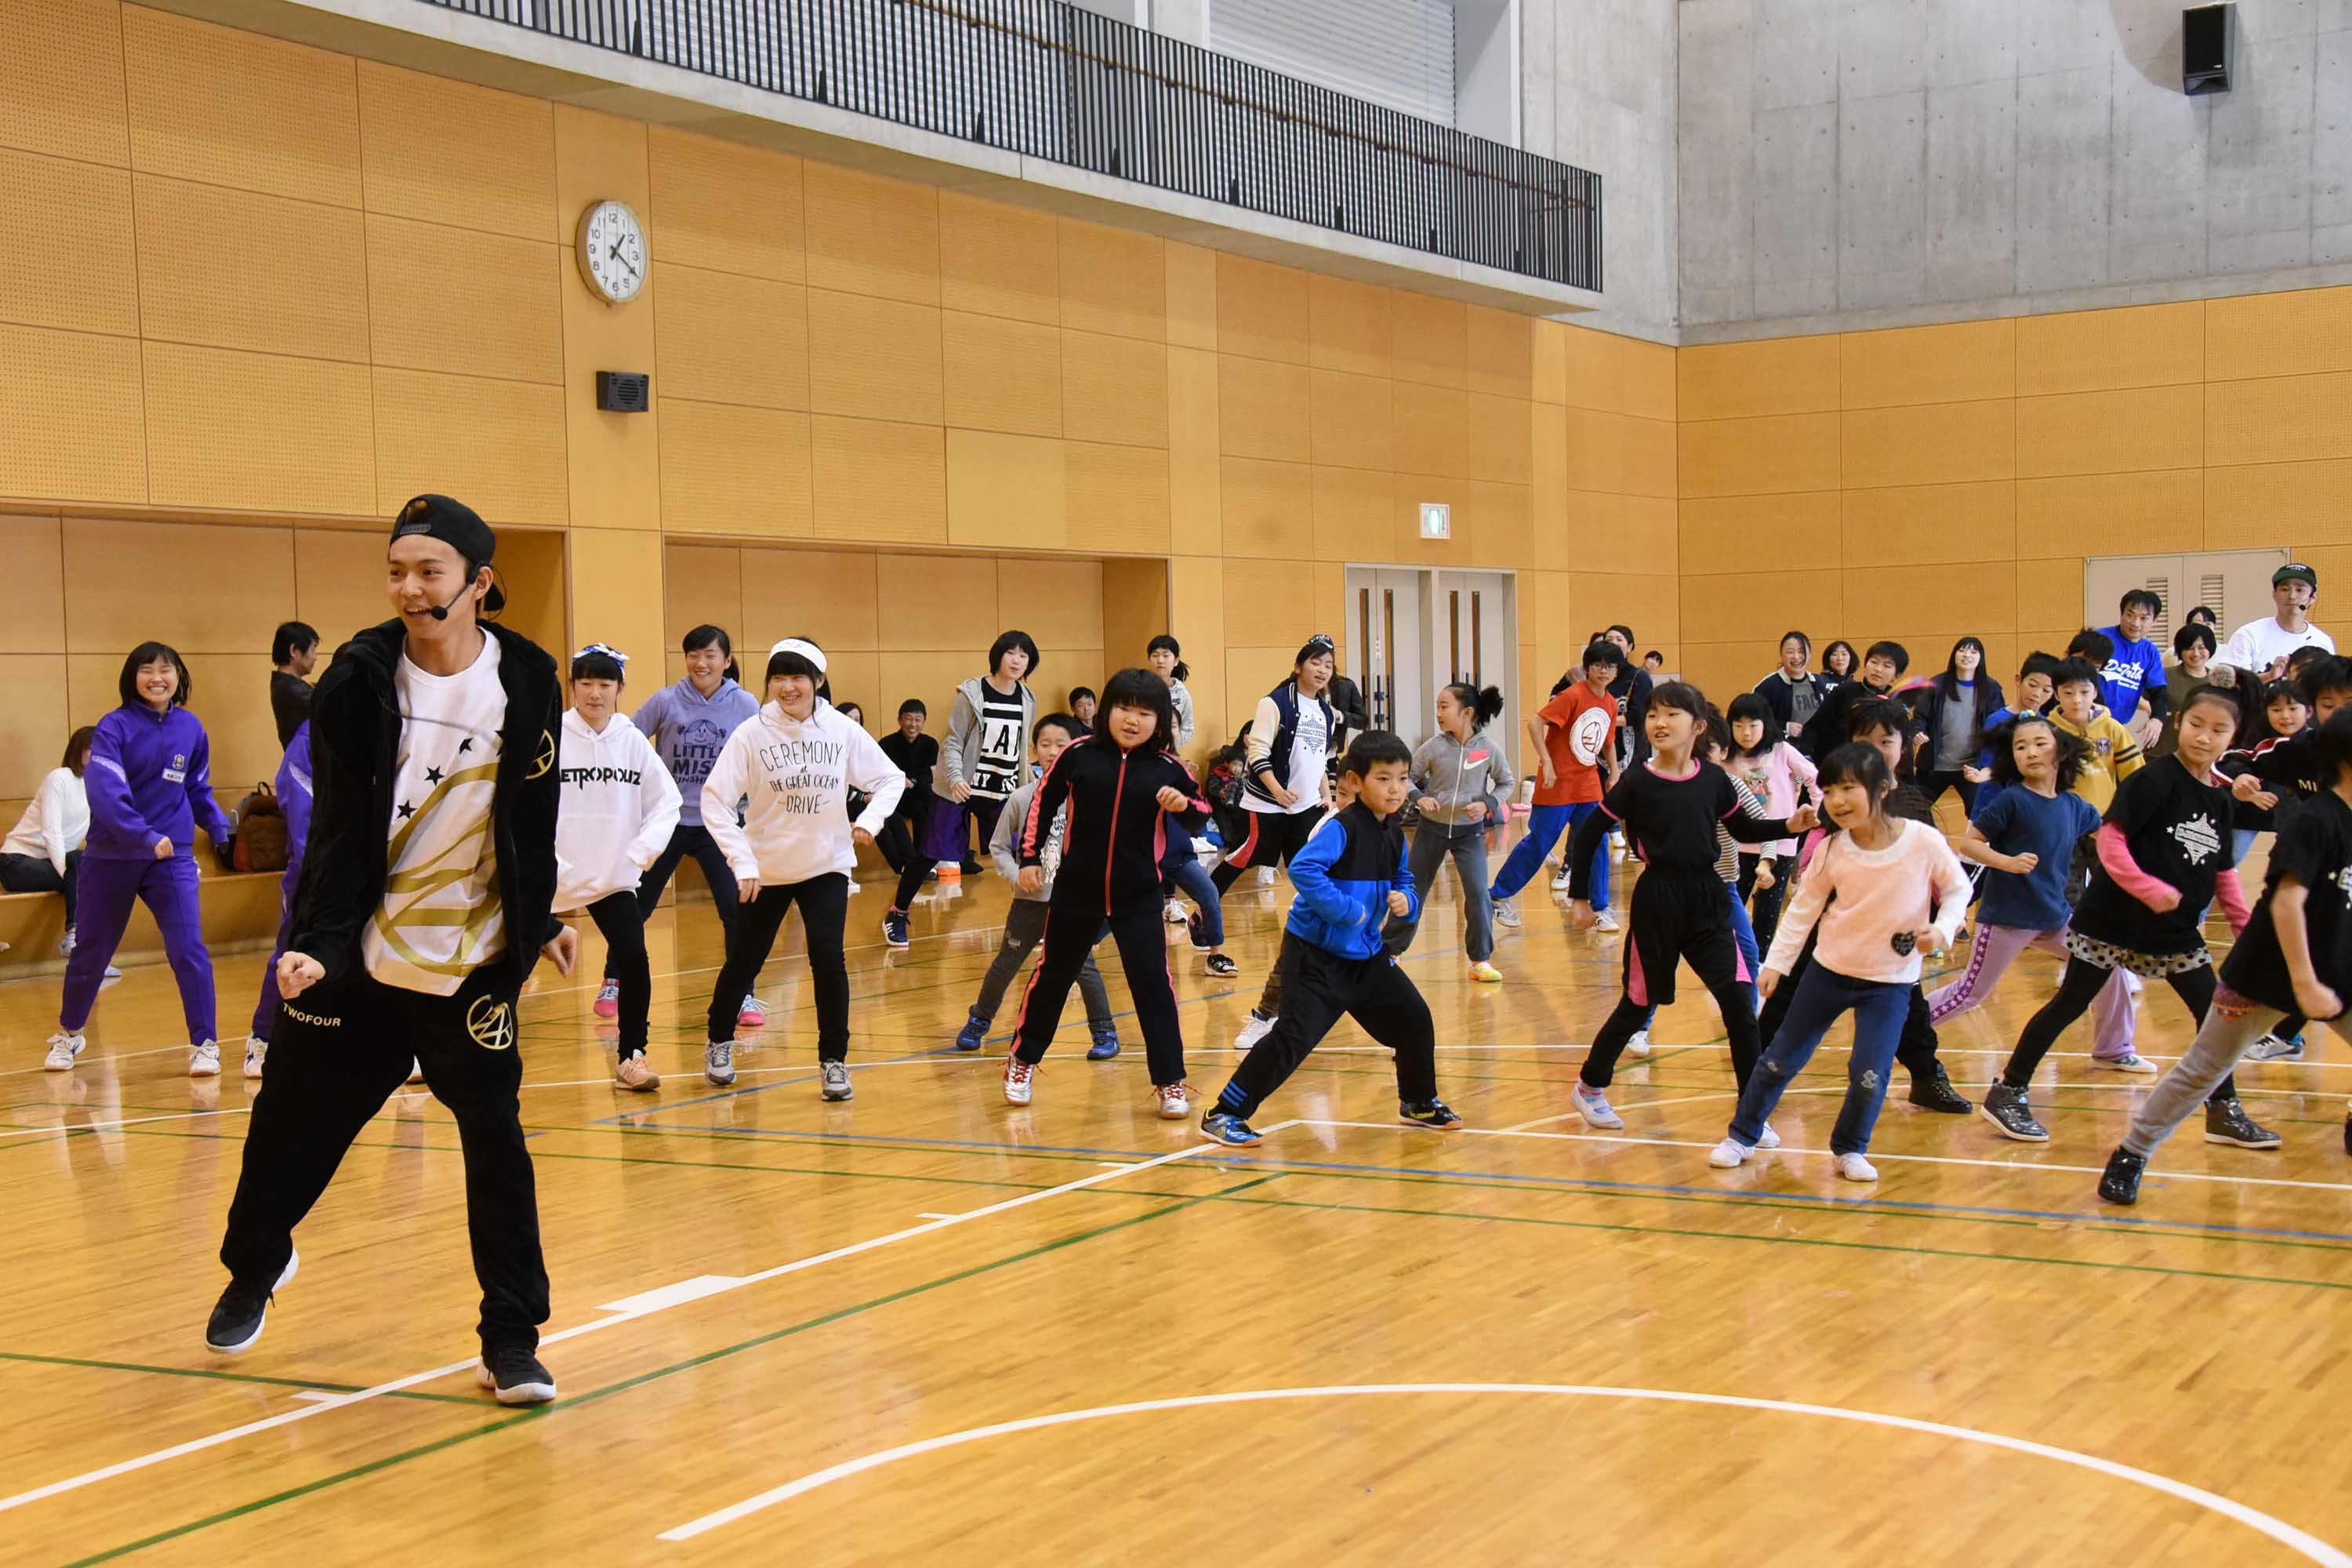 Exile佐藤大樹がサプライズで子どもたちにダンスを指導 夢の課外授業スペシャルin猪苗代 が福島で開催 Spice エンタメ特化型情報メディア スパイス